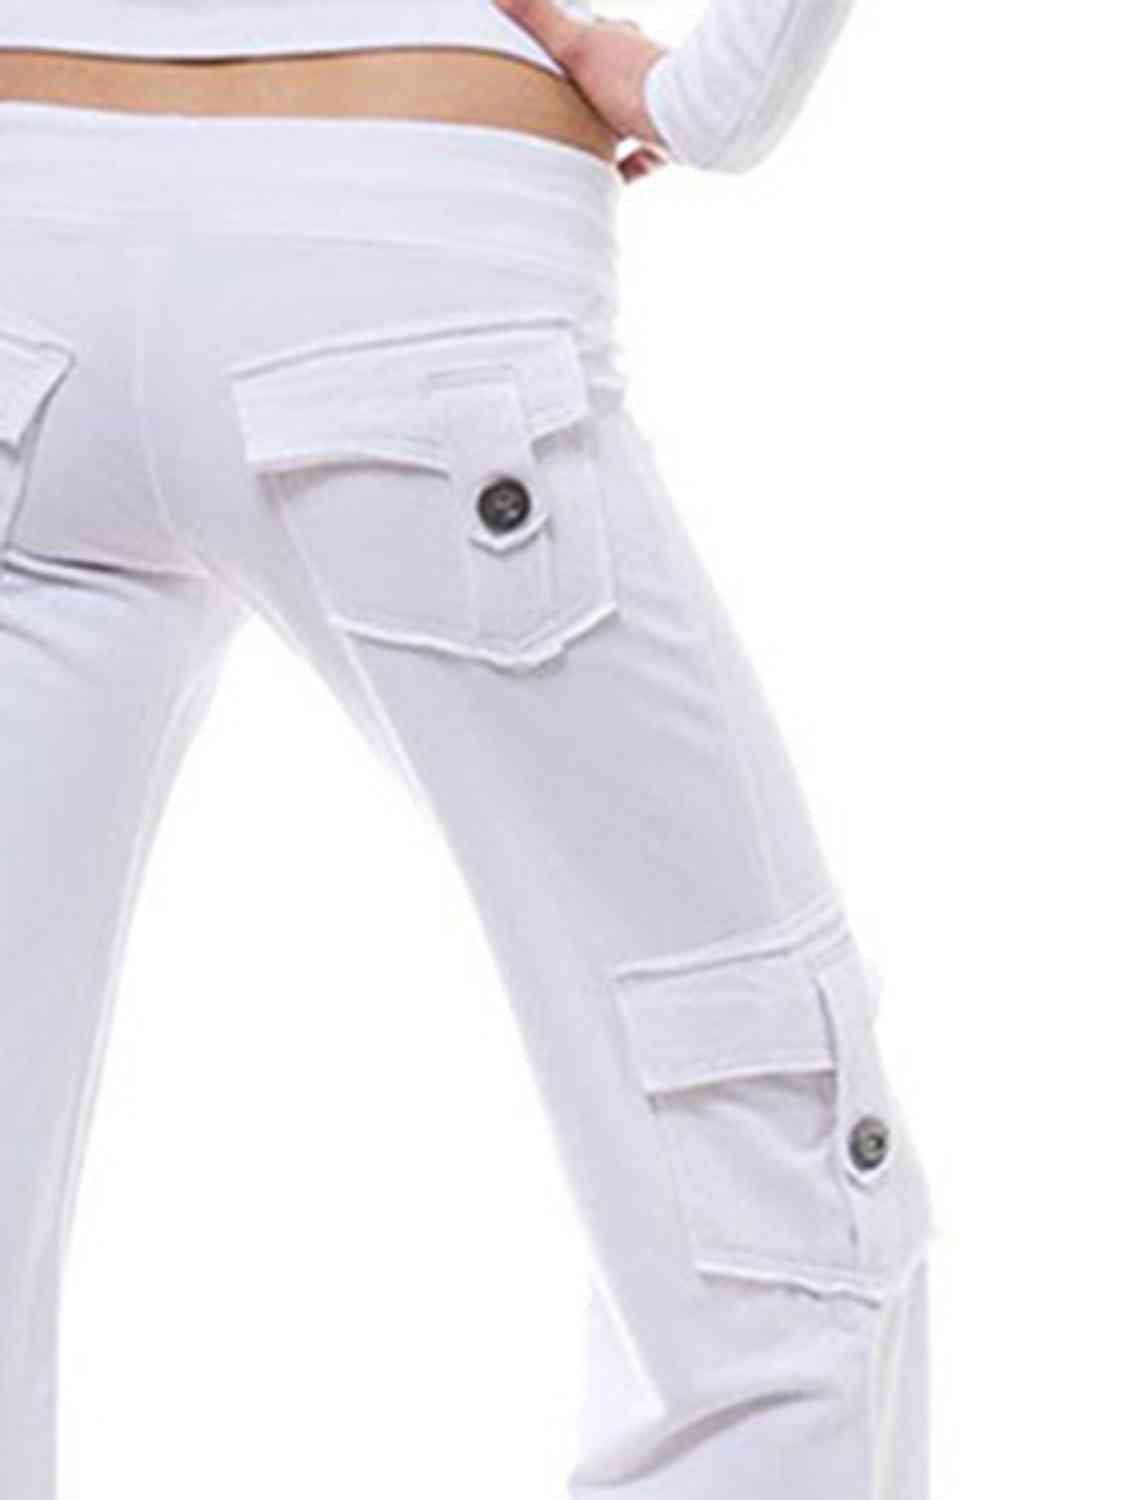 Mid Waist Pants with Pockets - Bona Fide Fashion